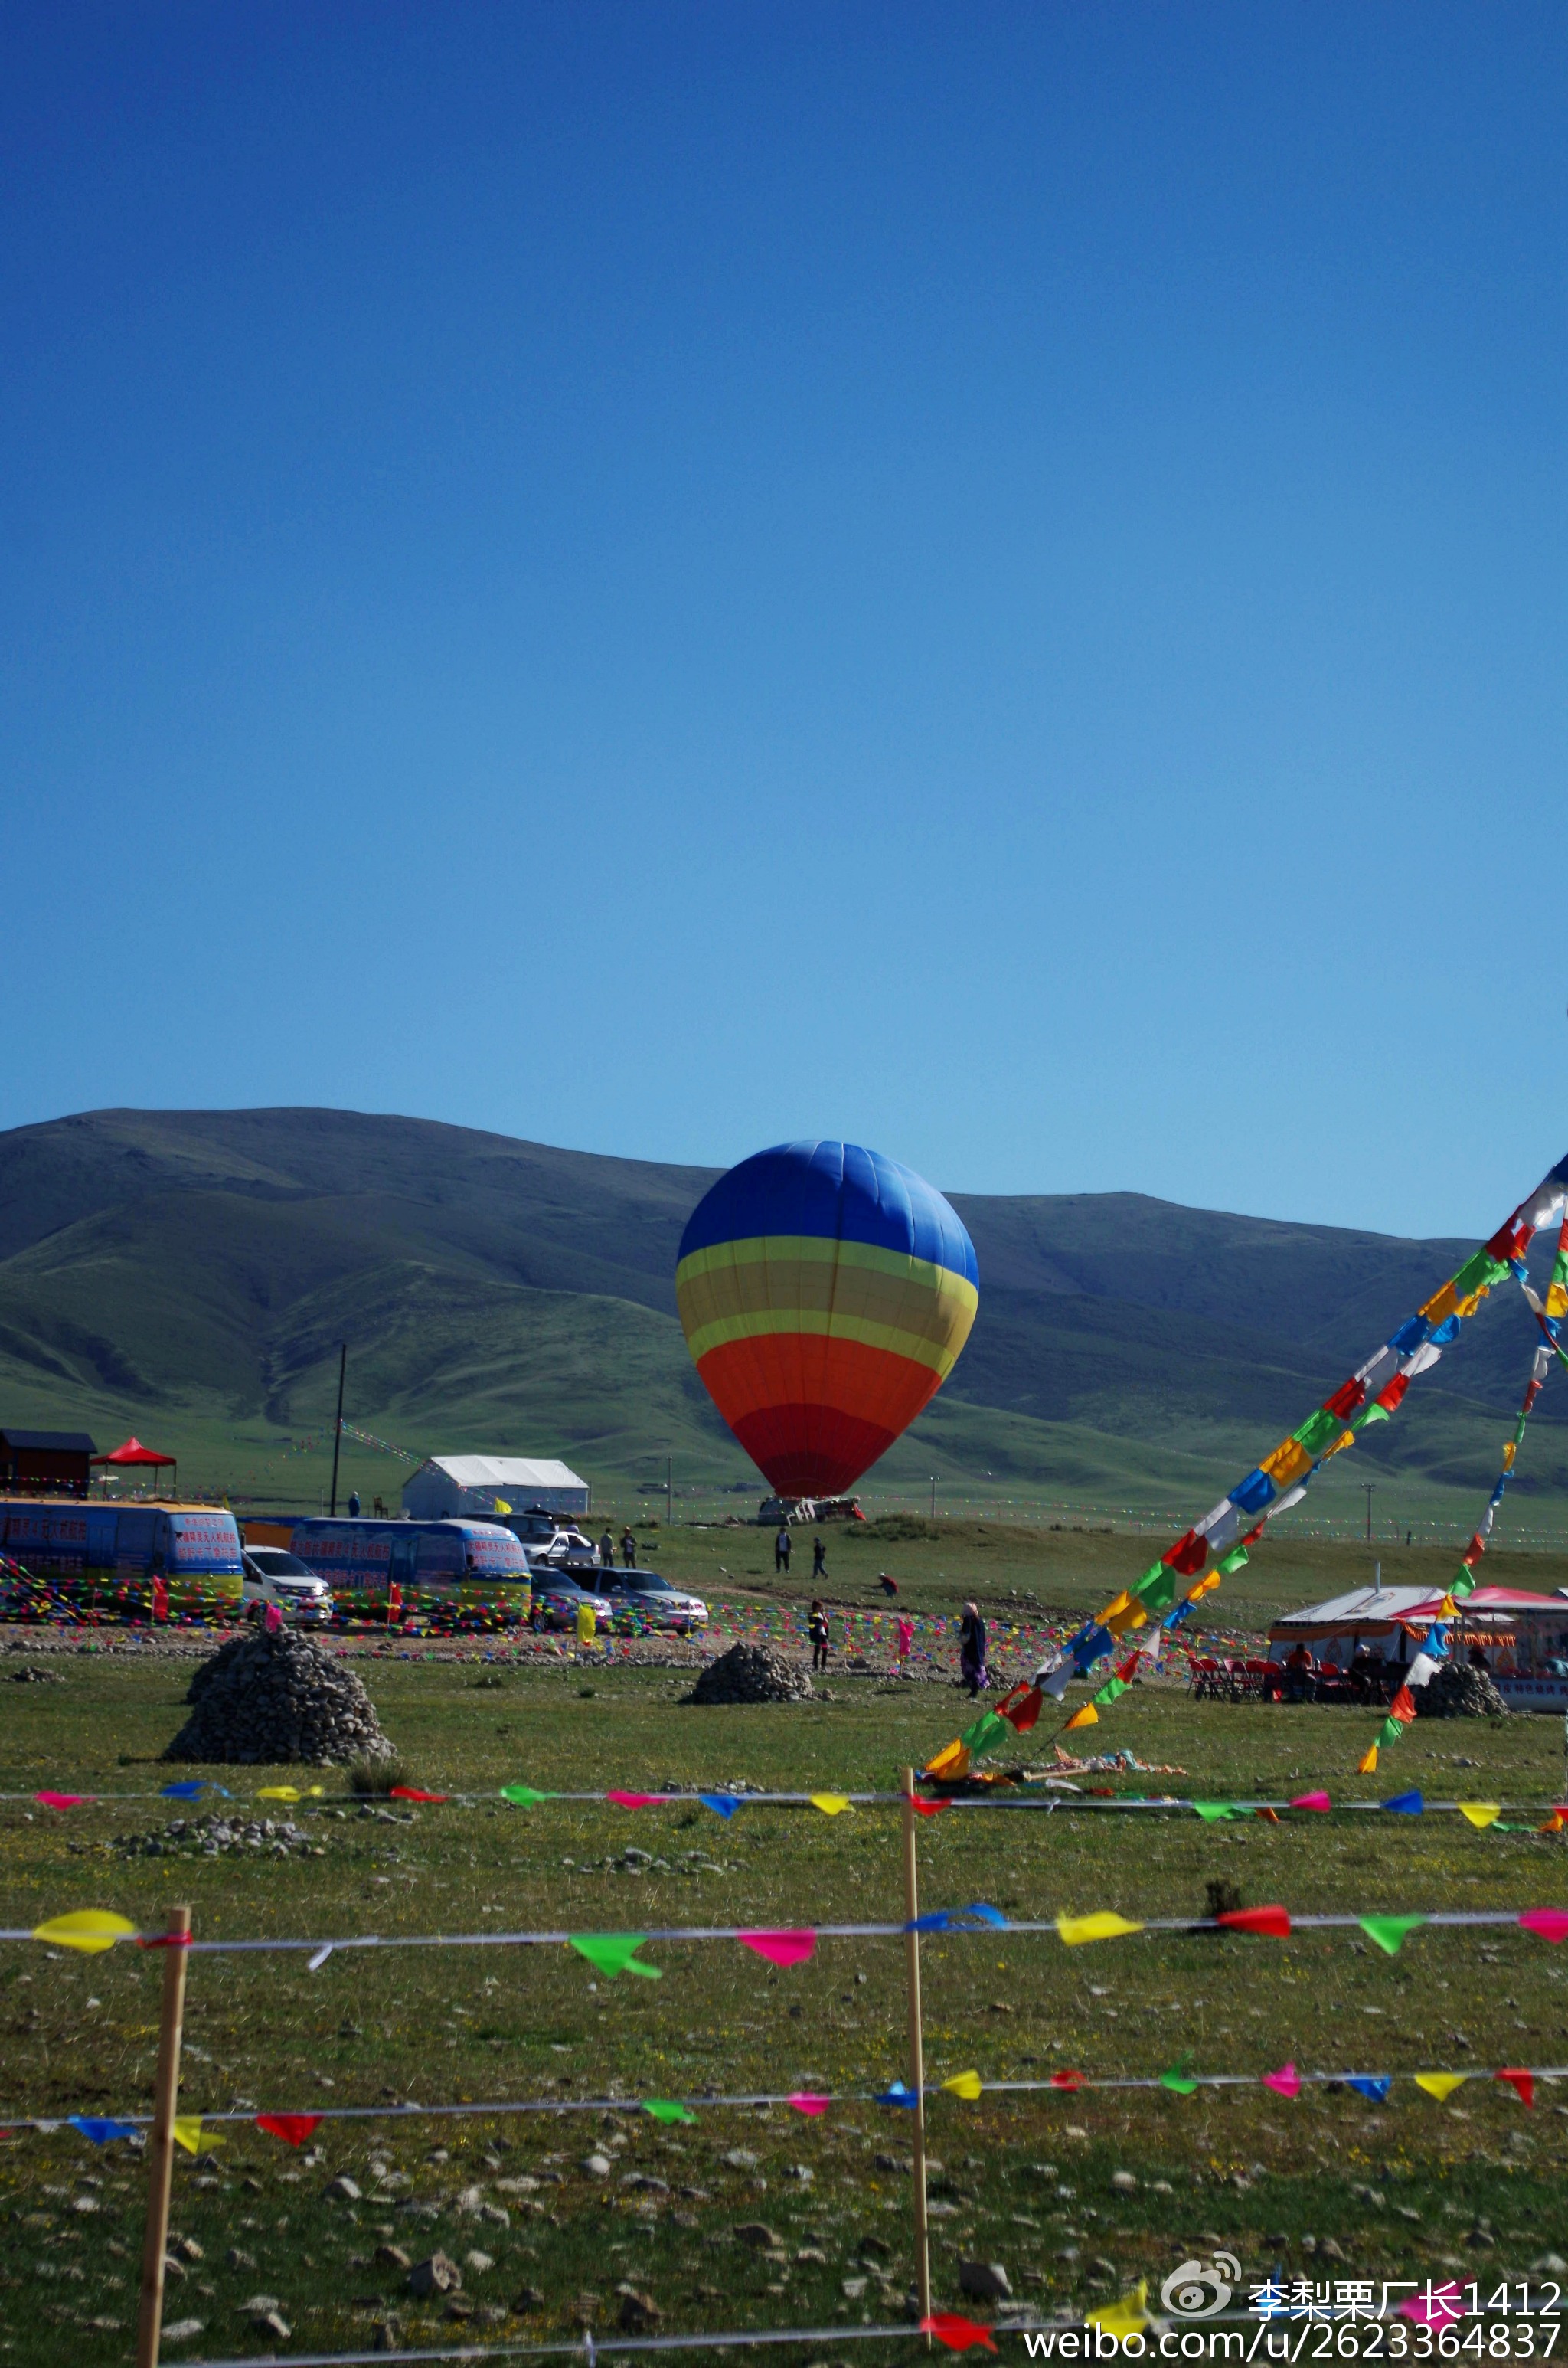 青海湖边的热气球,背后的山貌似是南山?